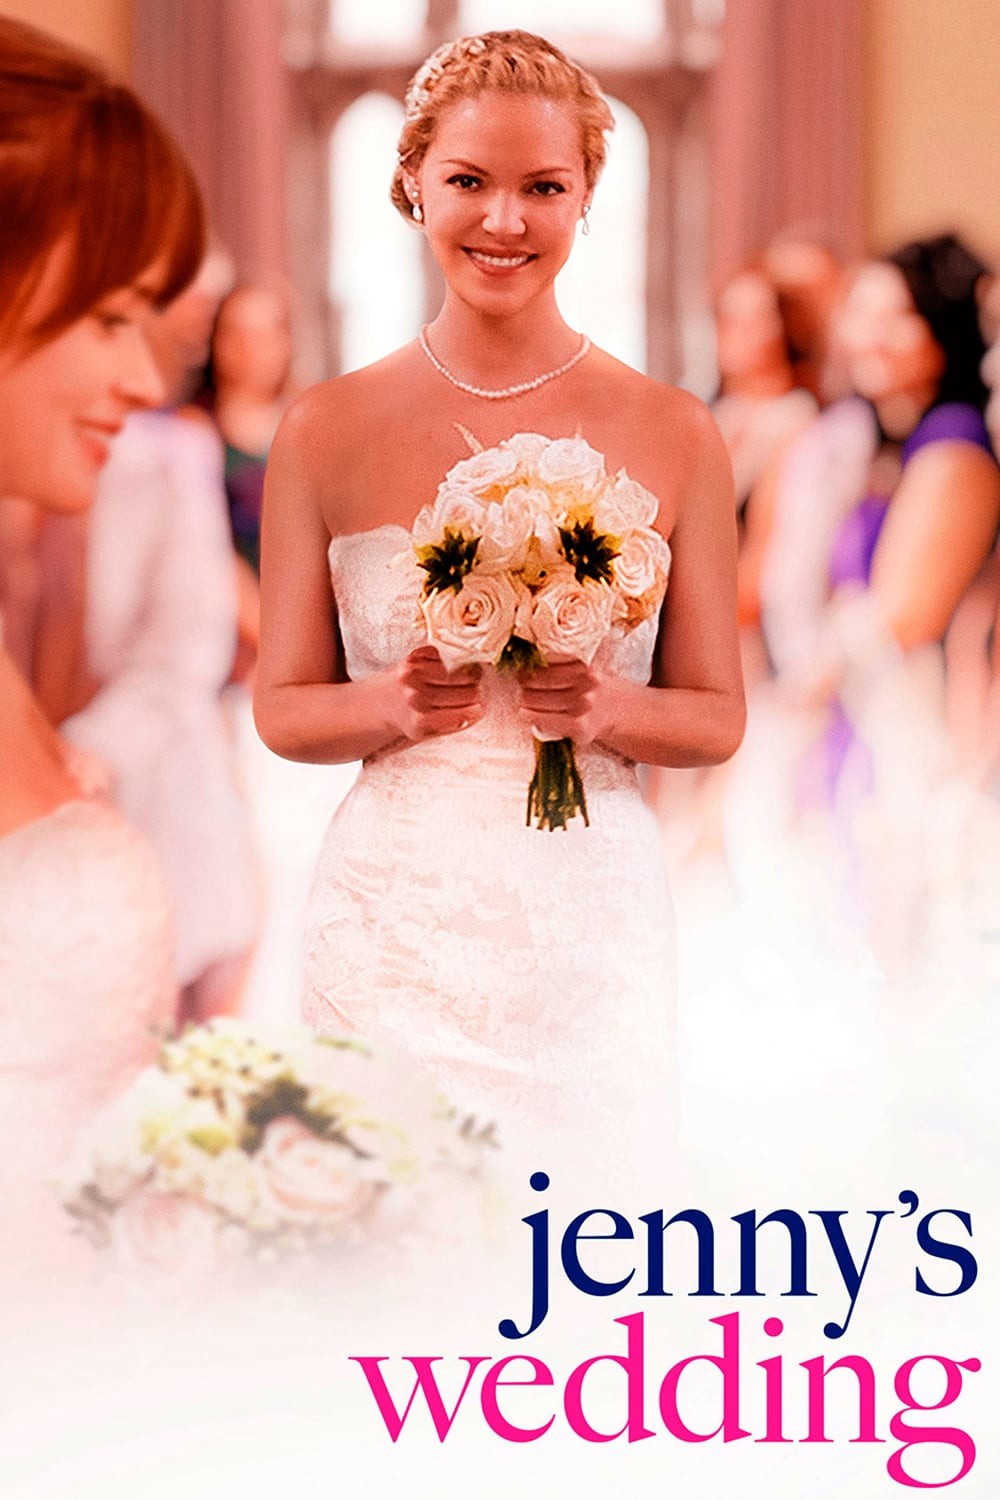 Hôn Nhân Đồng Tính - Jenny's Wedding (2015)